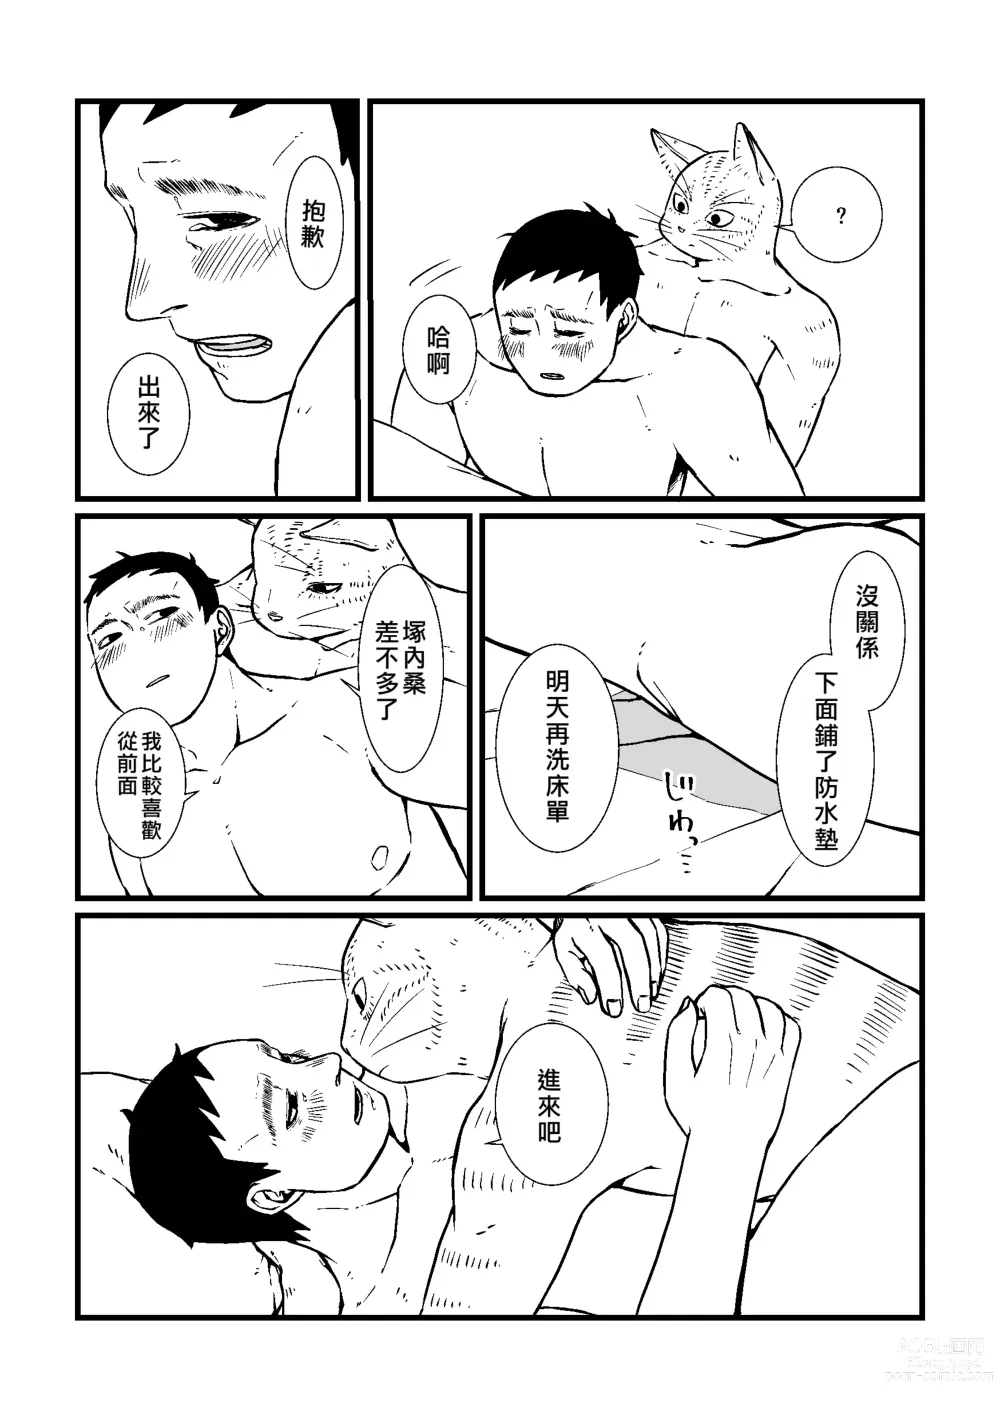 Page 19 of doujinshi Sansa x Tsukauchi R18 Manga